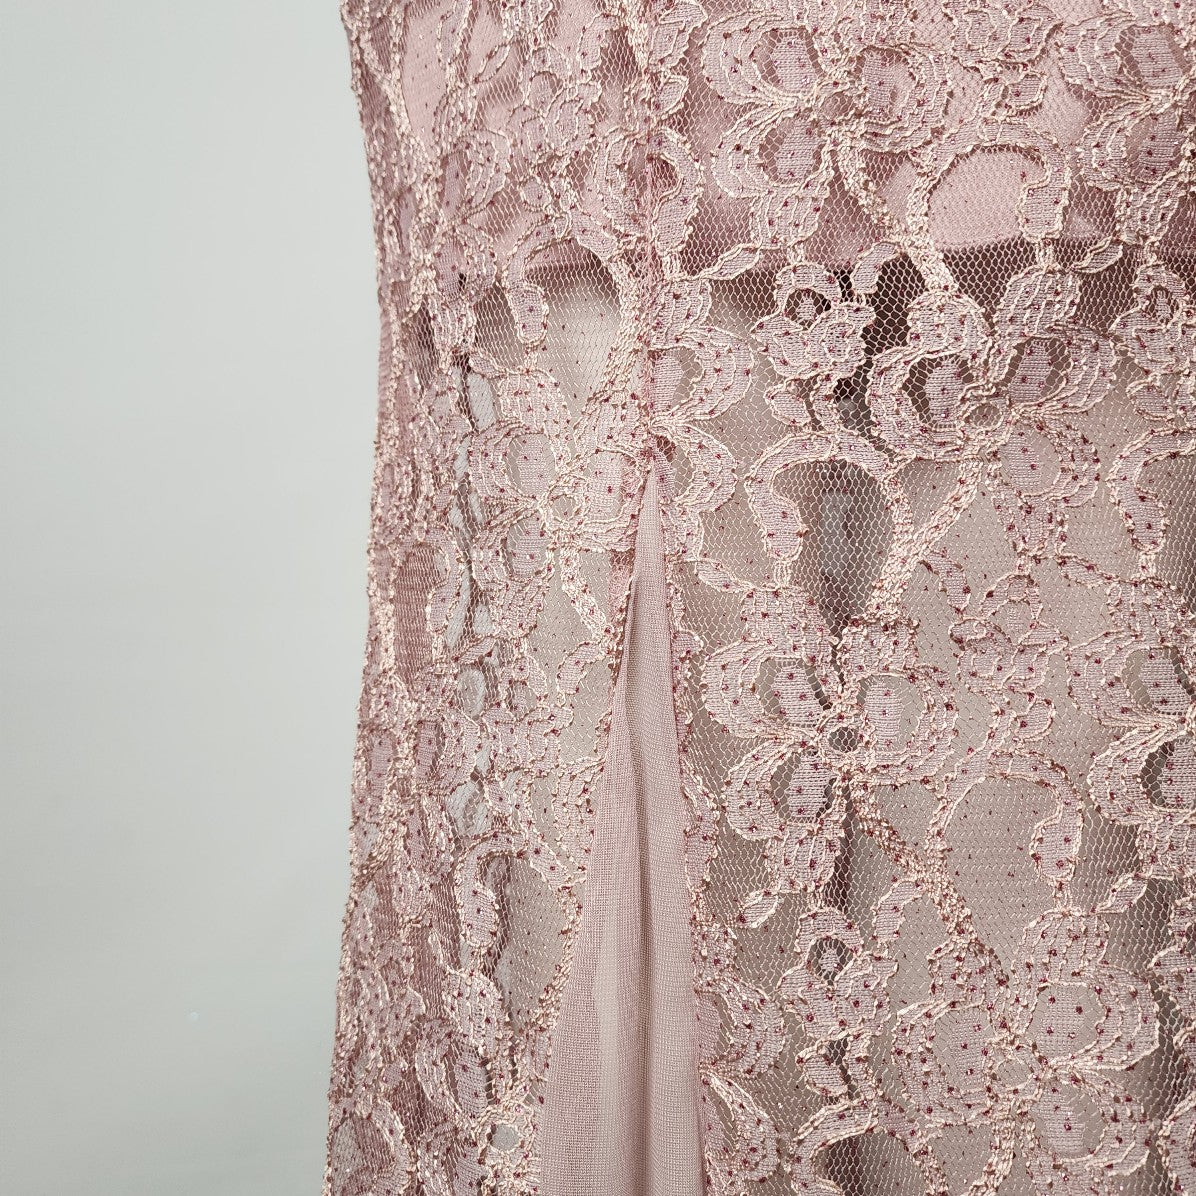 Enfocus Studio Pink Lace Event Gown Size 10